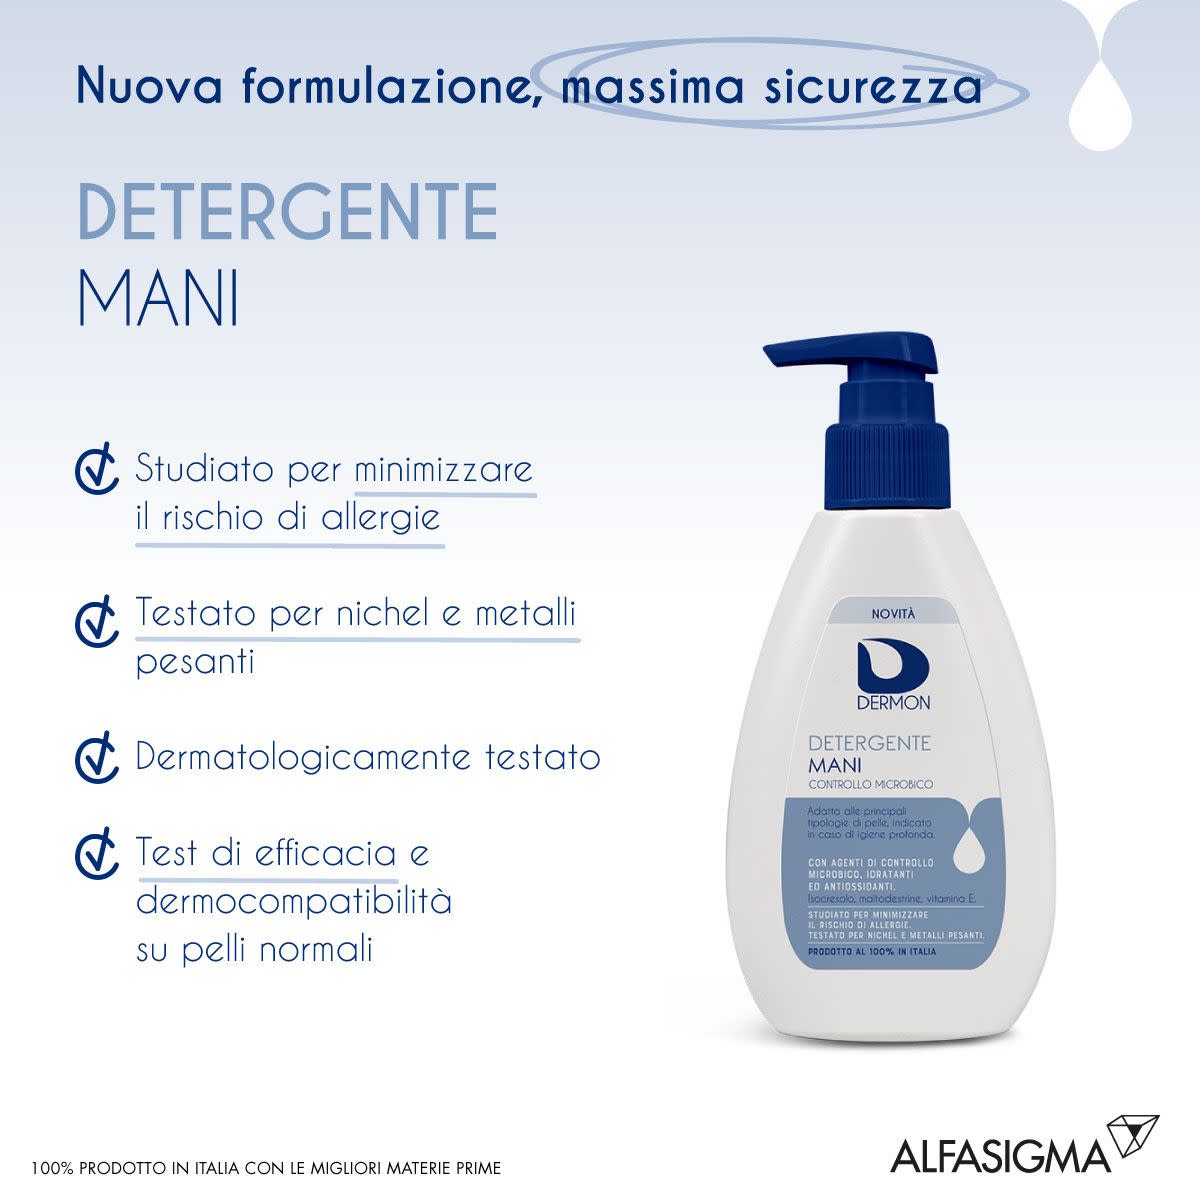 981389366 - Dermon Detergente Mani Controllo Microbico 200ml - 4708755_5.jpg